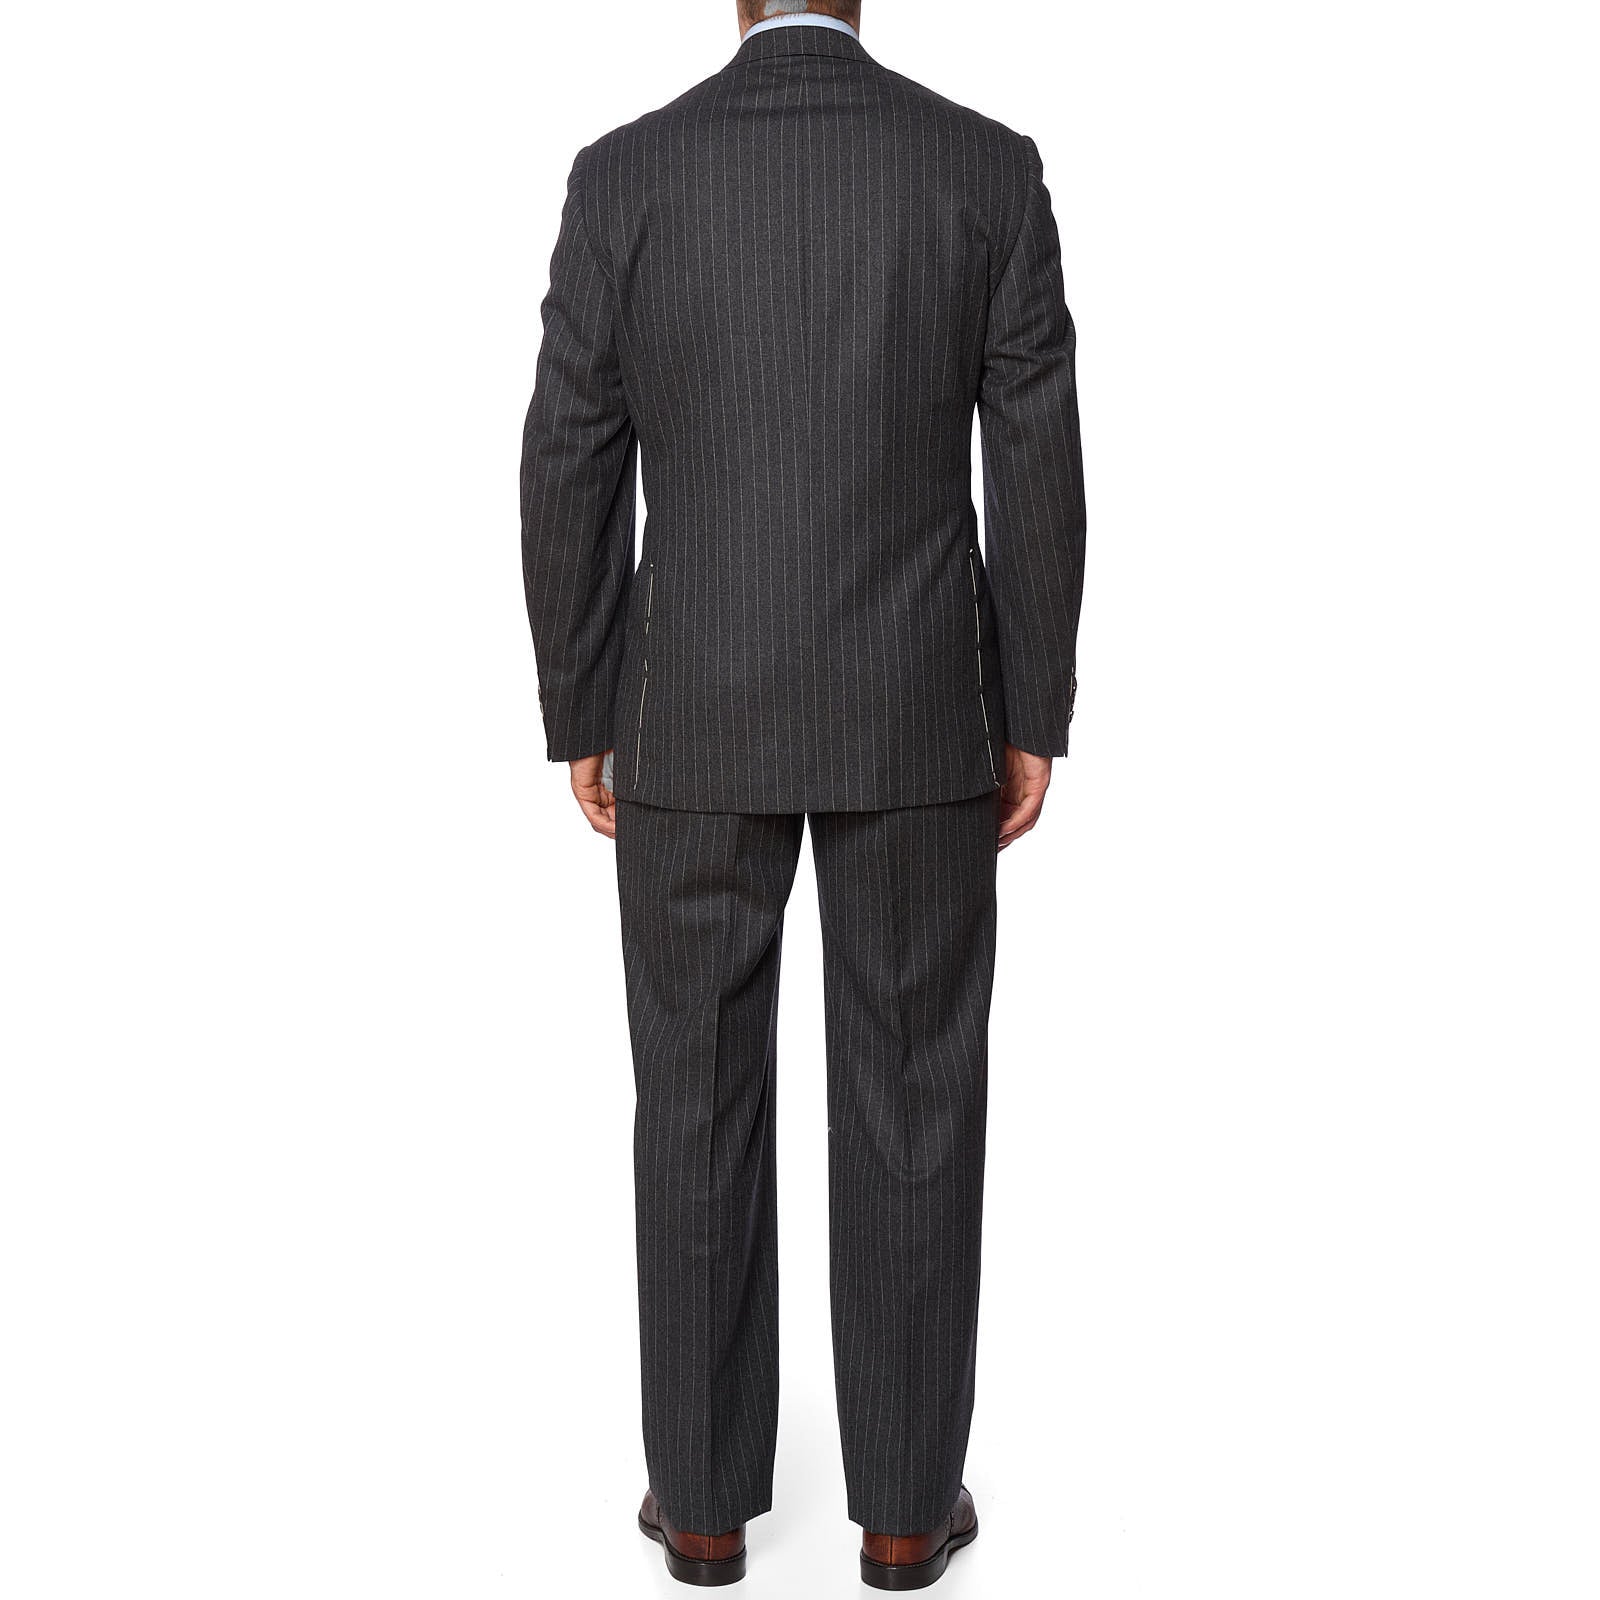 SARTORIA PARTENOPEA x VANNUCCI Gray Super 120's Handmade Suit EU 54 NEW US 42